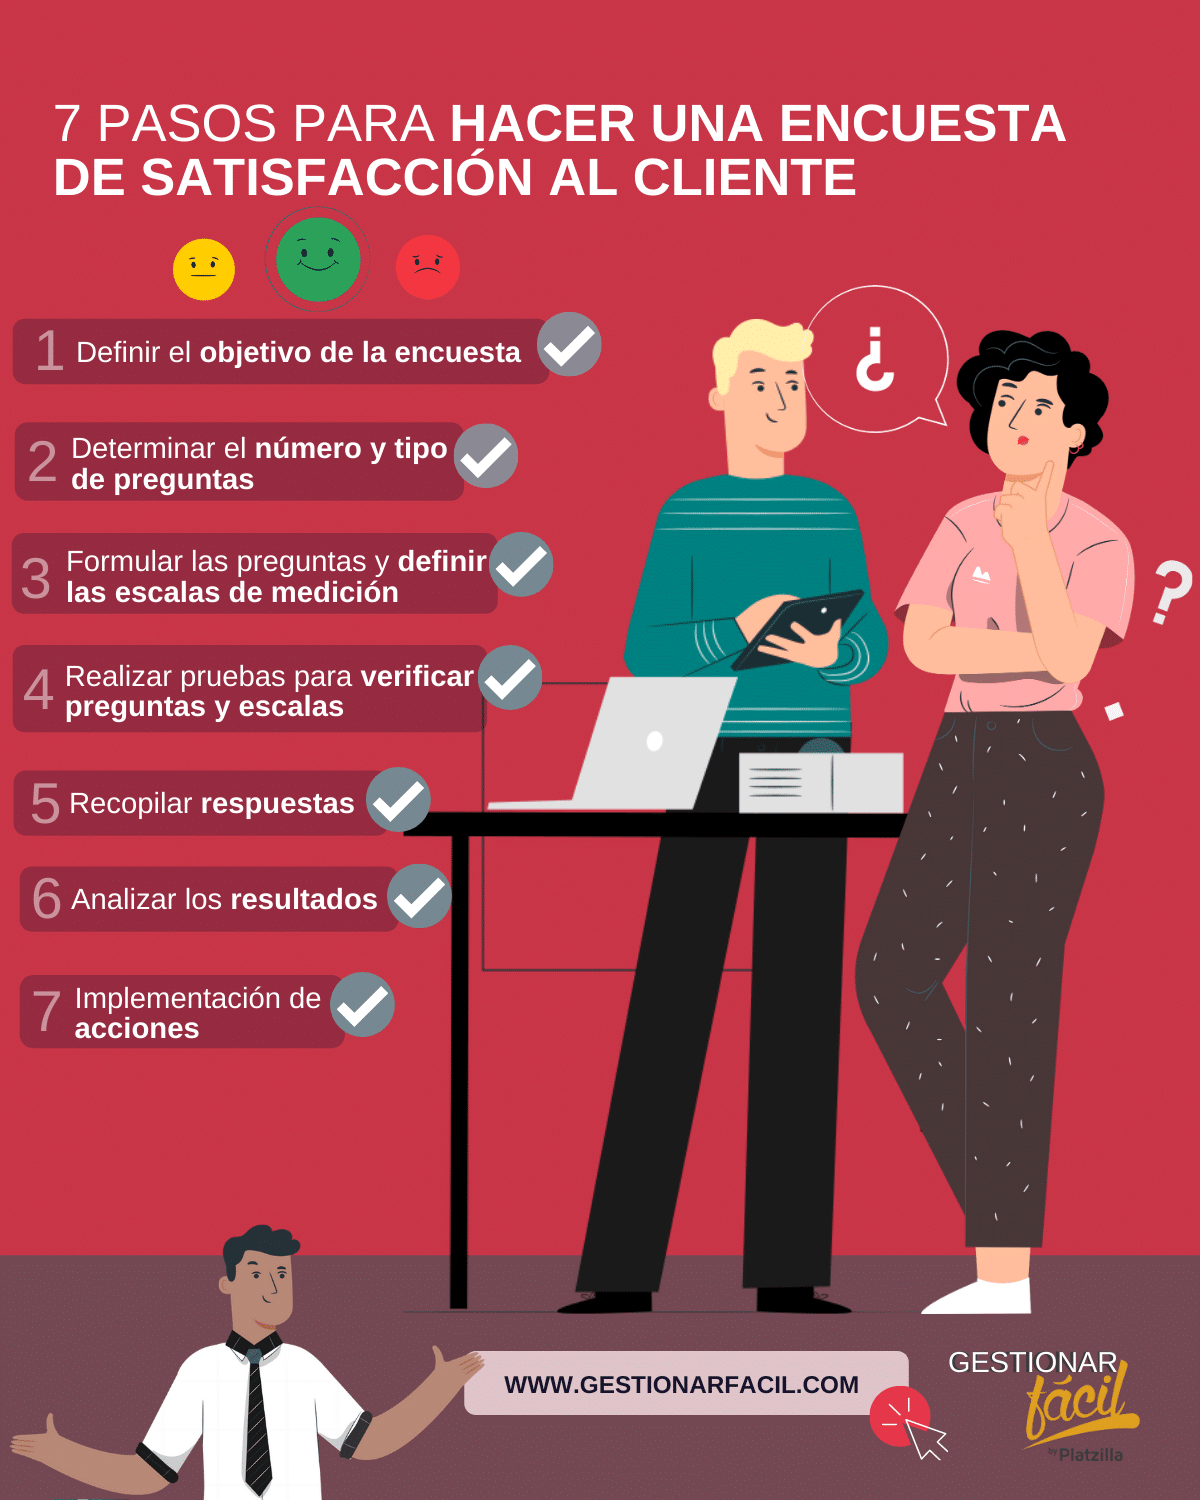 7 pasos para hacer una encuesta de satisfacción al cliente